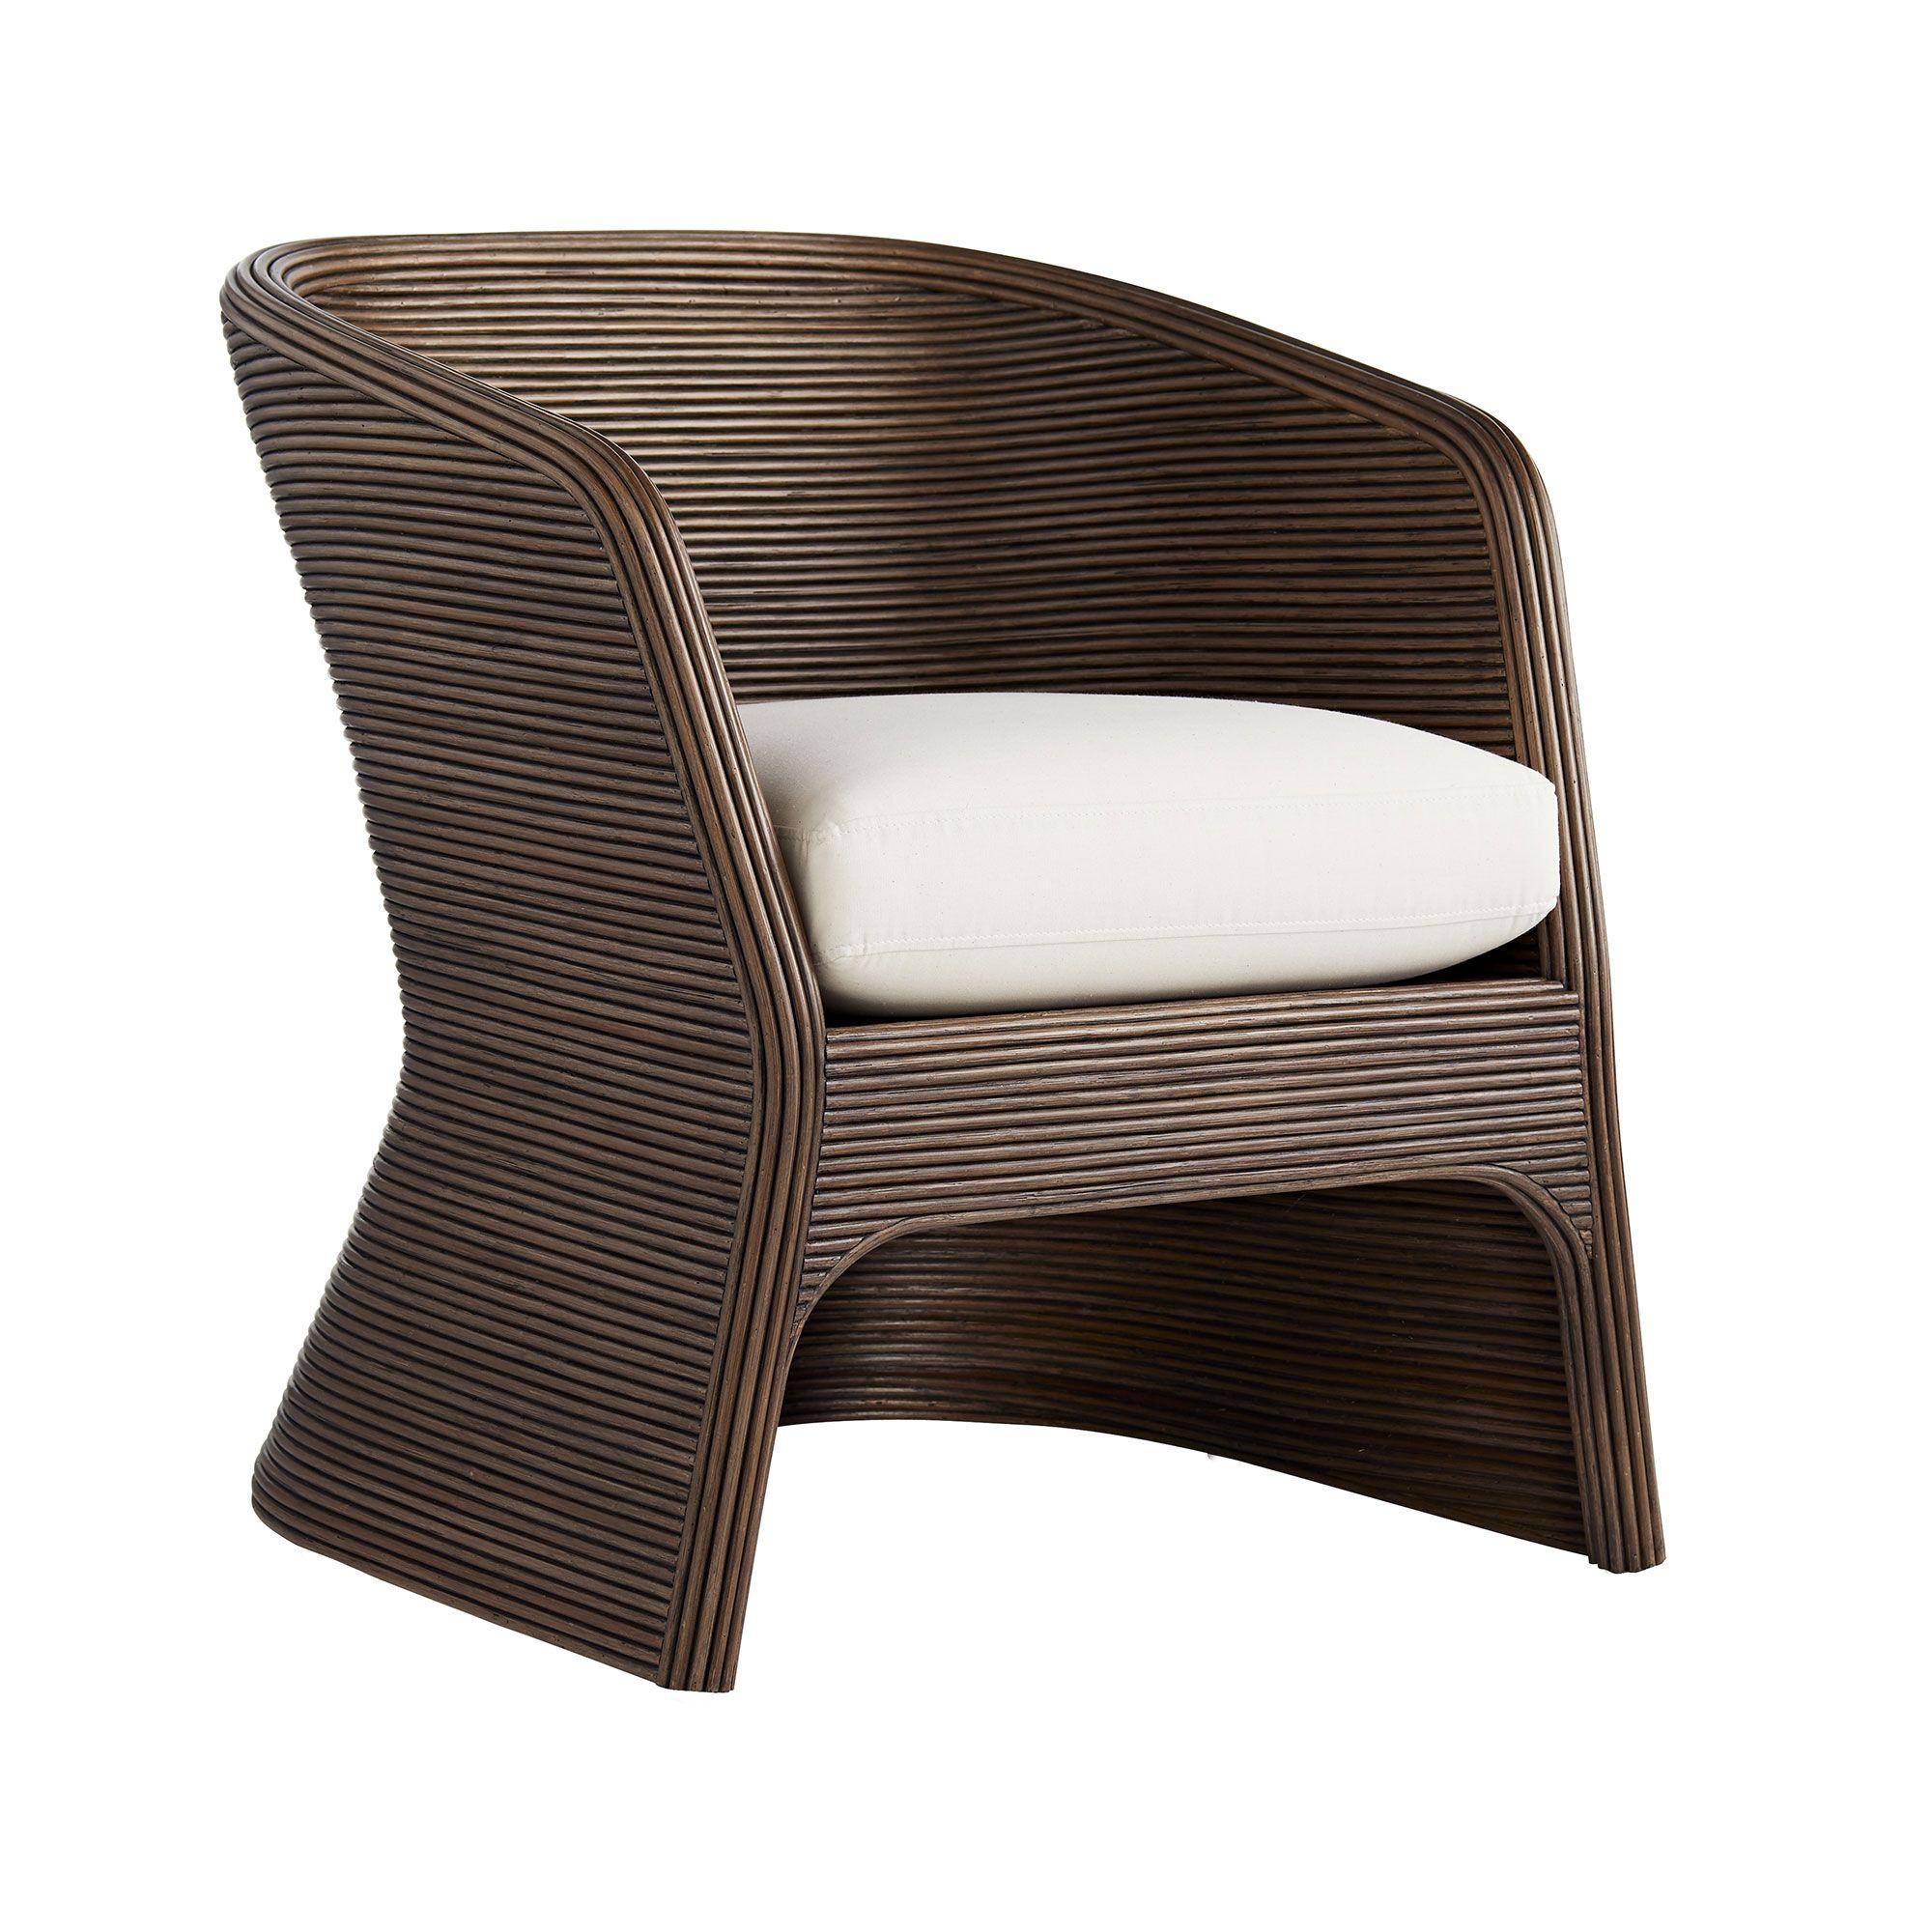 Купить Кресло Itiga Chair в интернет-магазине roooms.ru